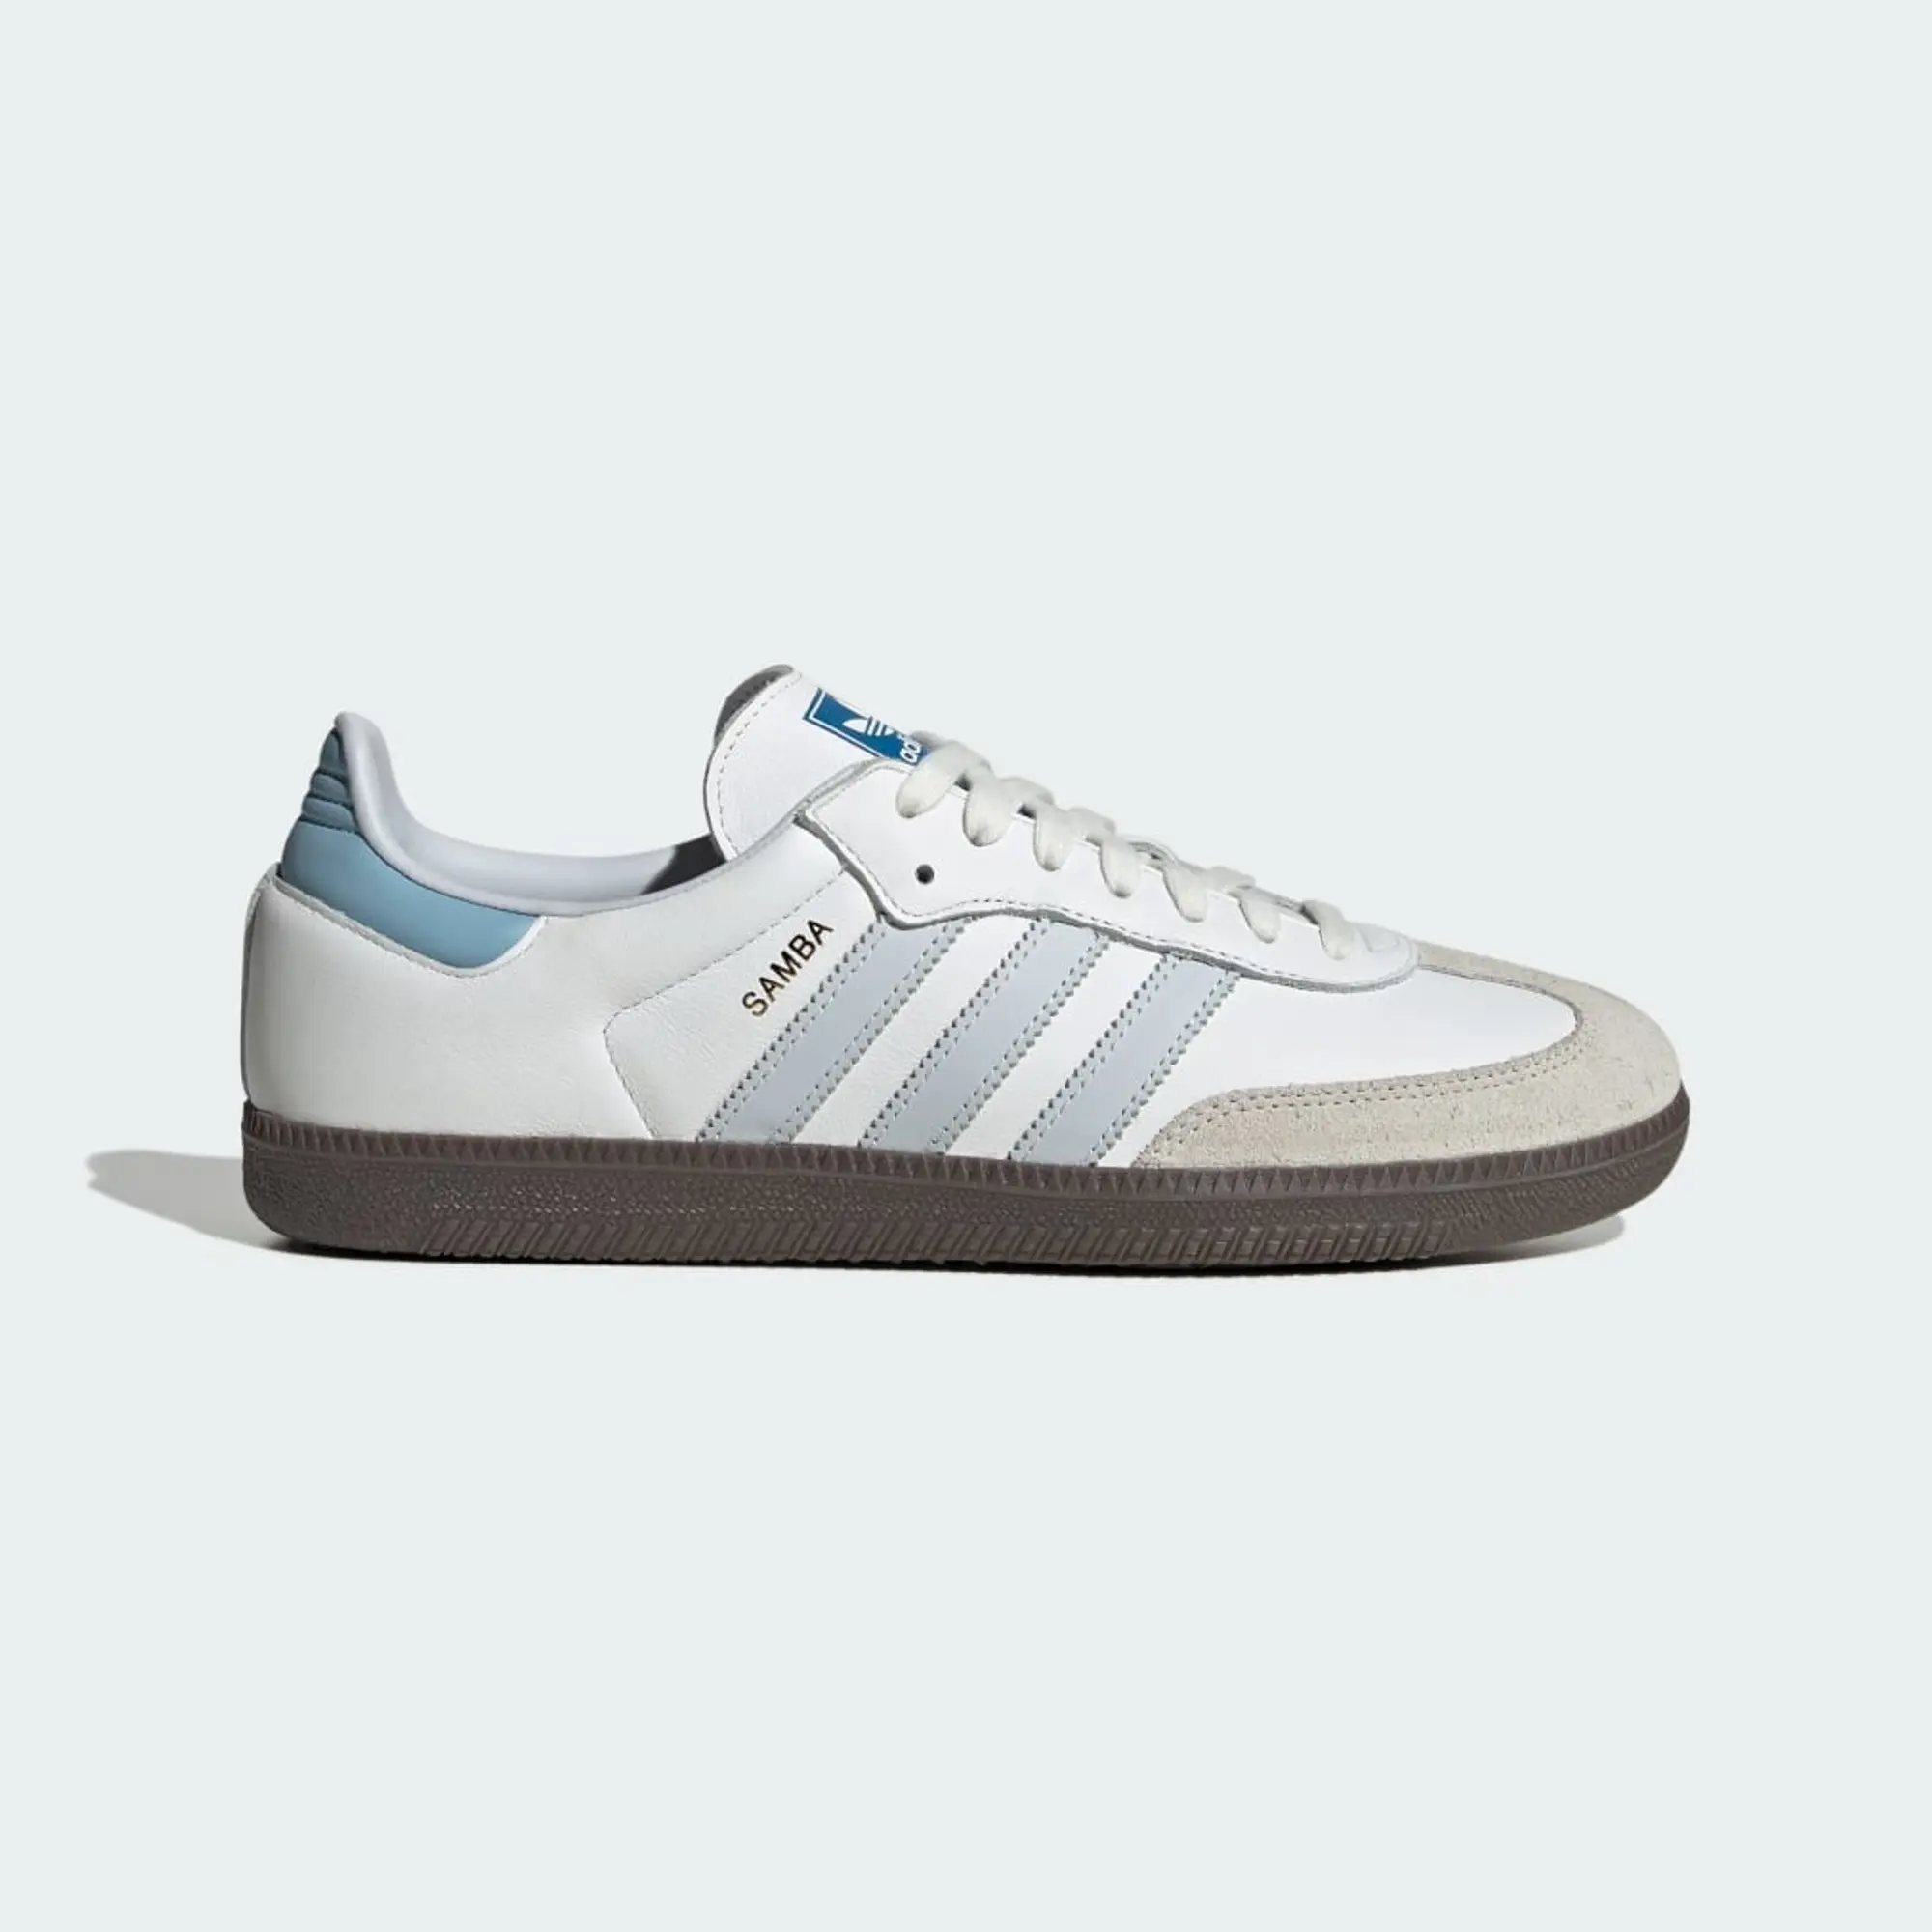 adidas Samba OG White / Halo Blue Shoes